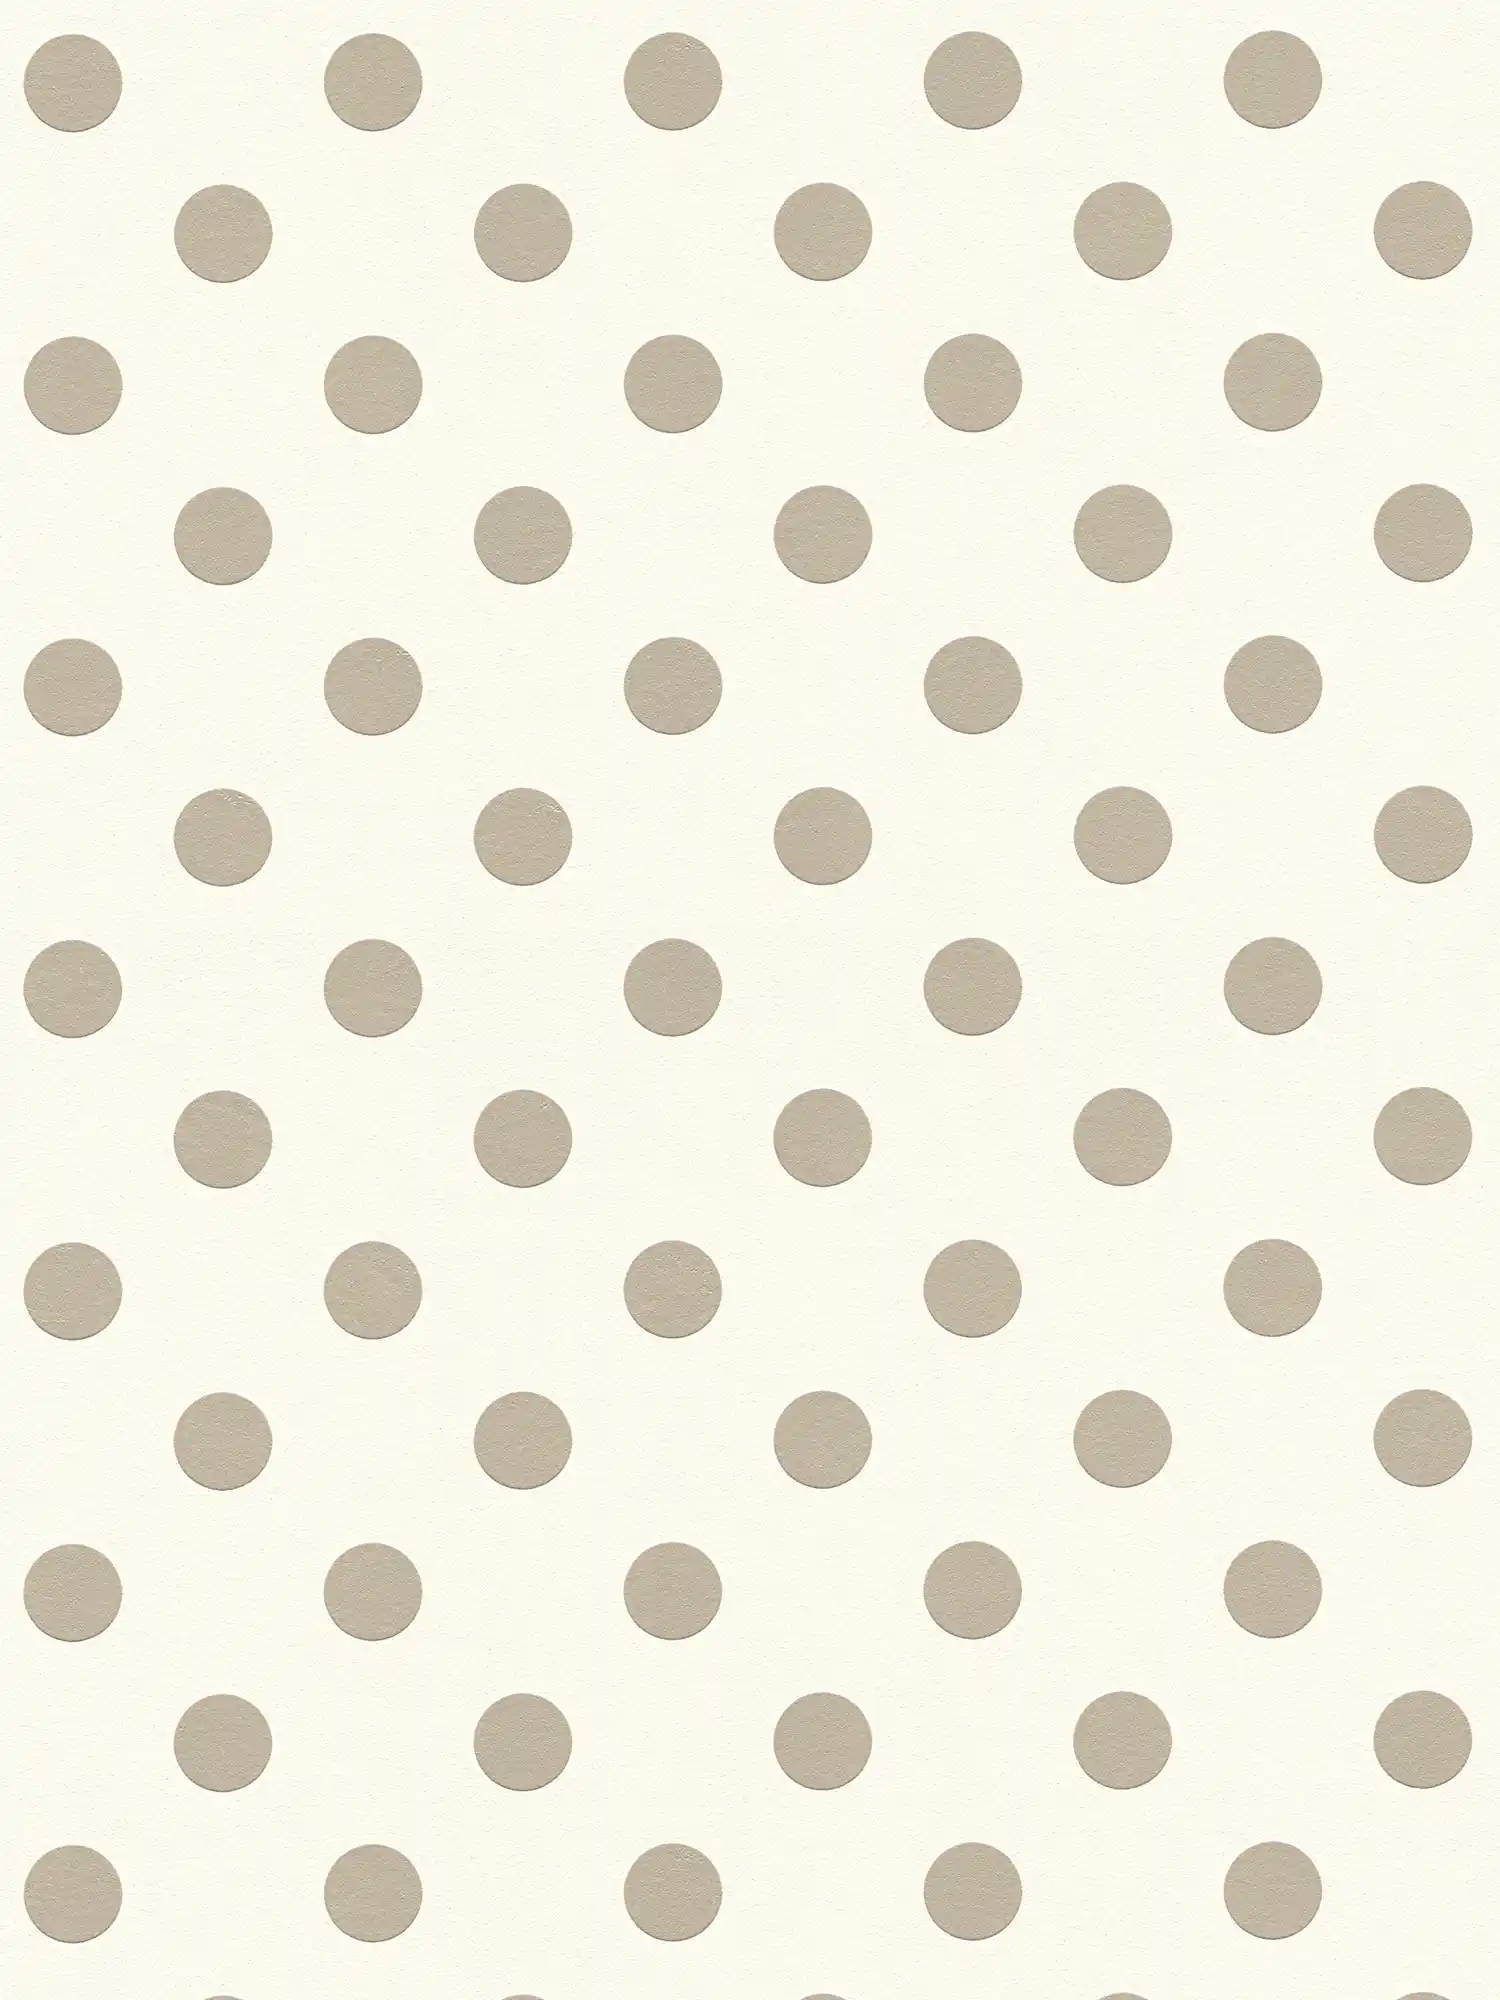         Vliestapete Punkte, Polka Dots Design für Kinderzimmer – Beige, Taupe
    